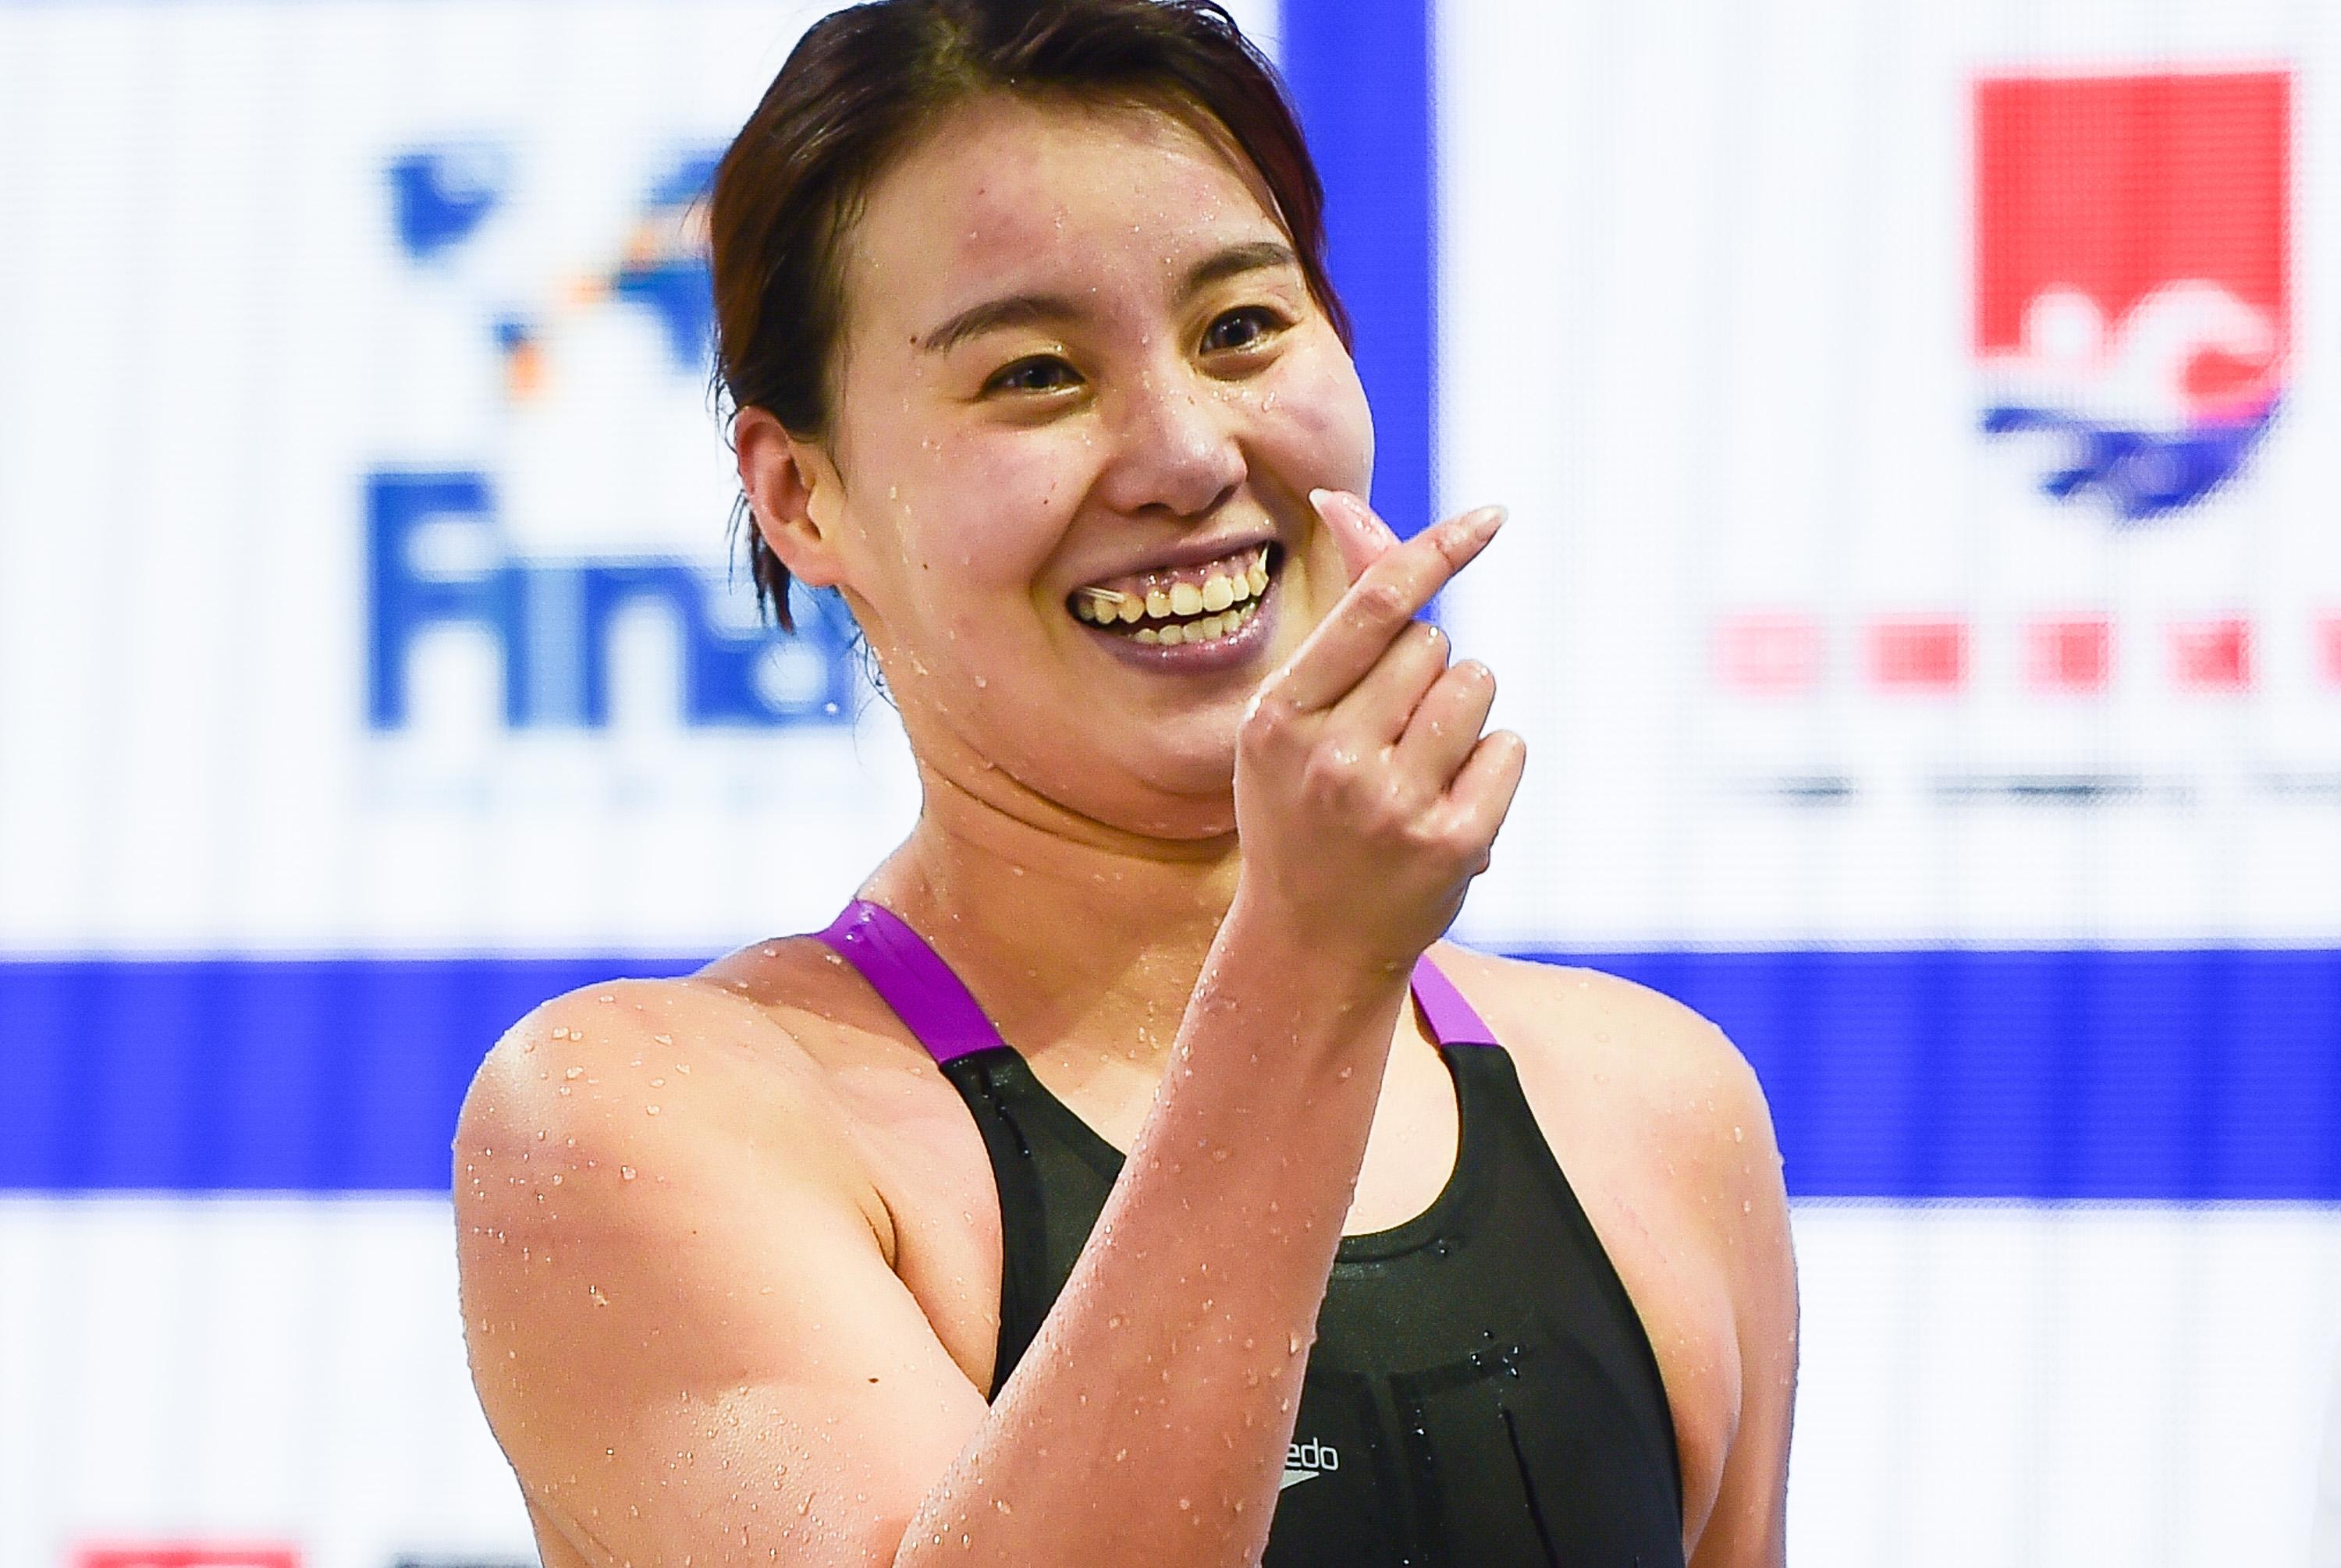 fina冠军系列赛:傅园慧获得女子100米仰泳冠军